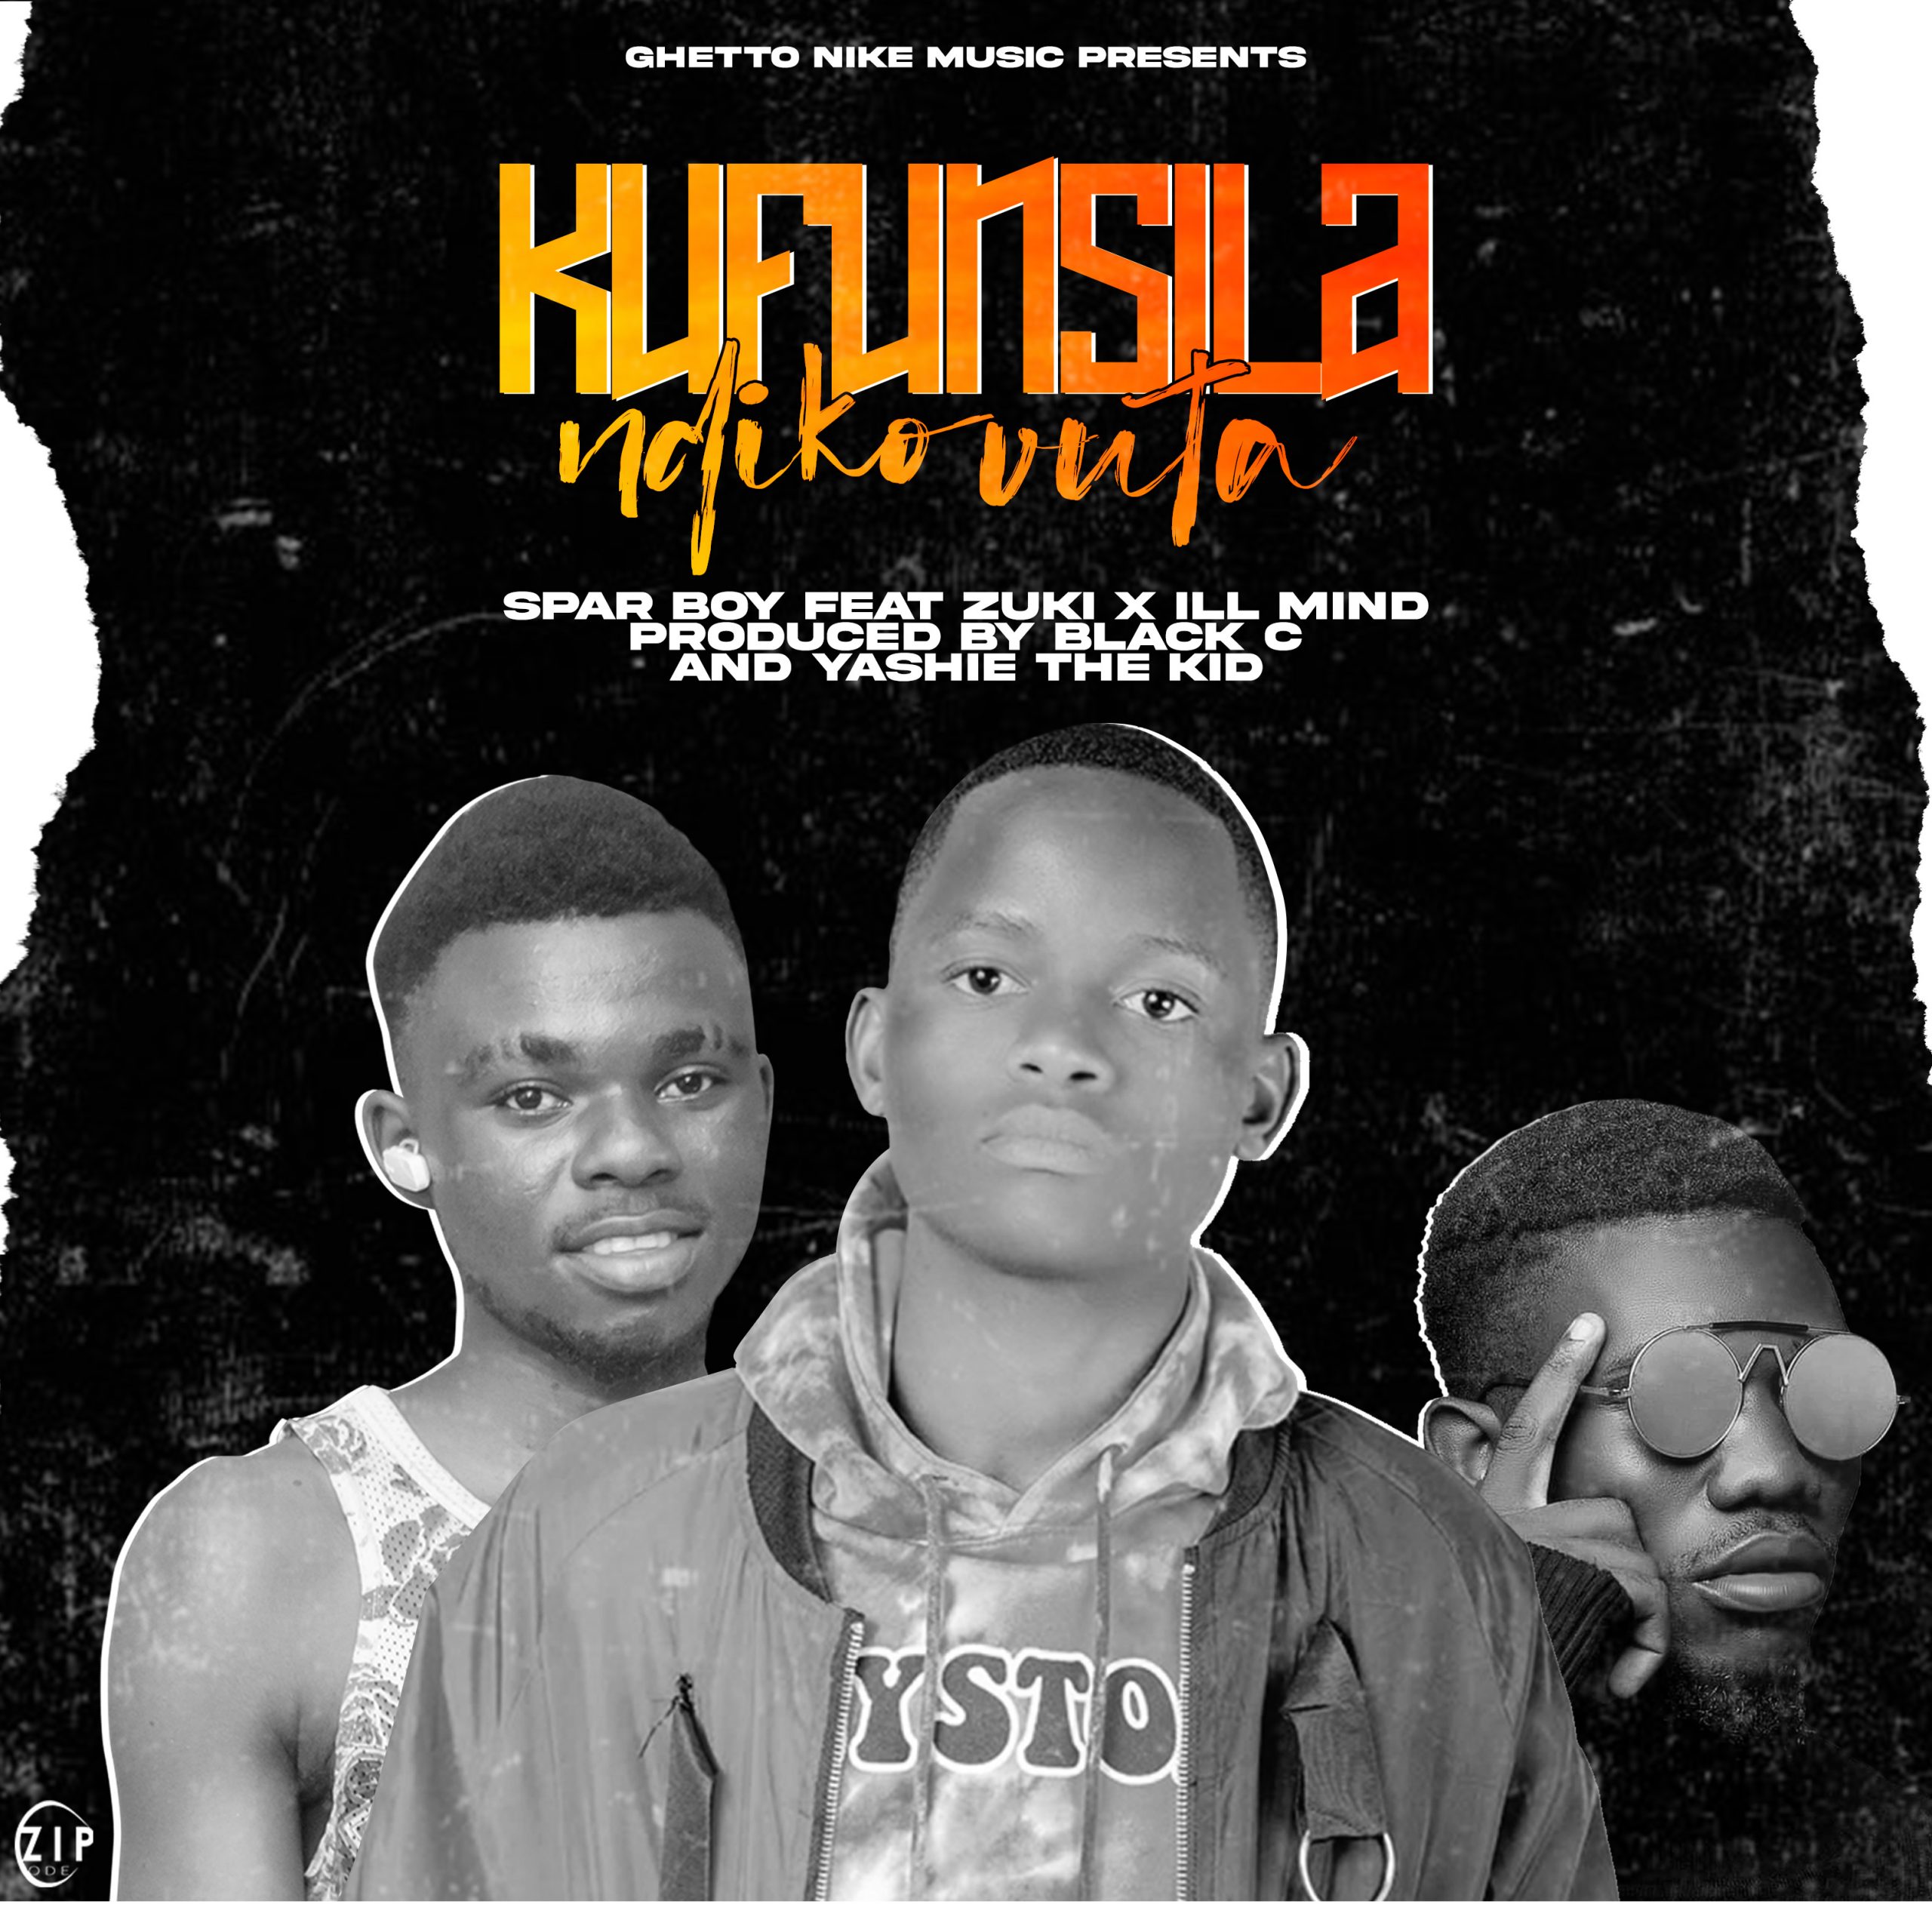  Spar Boy & Zuki feat Ill Mind Kufunsira  Ndikovuta  Prod by Black C & Yashie The Kid